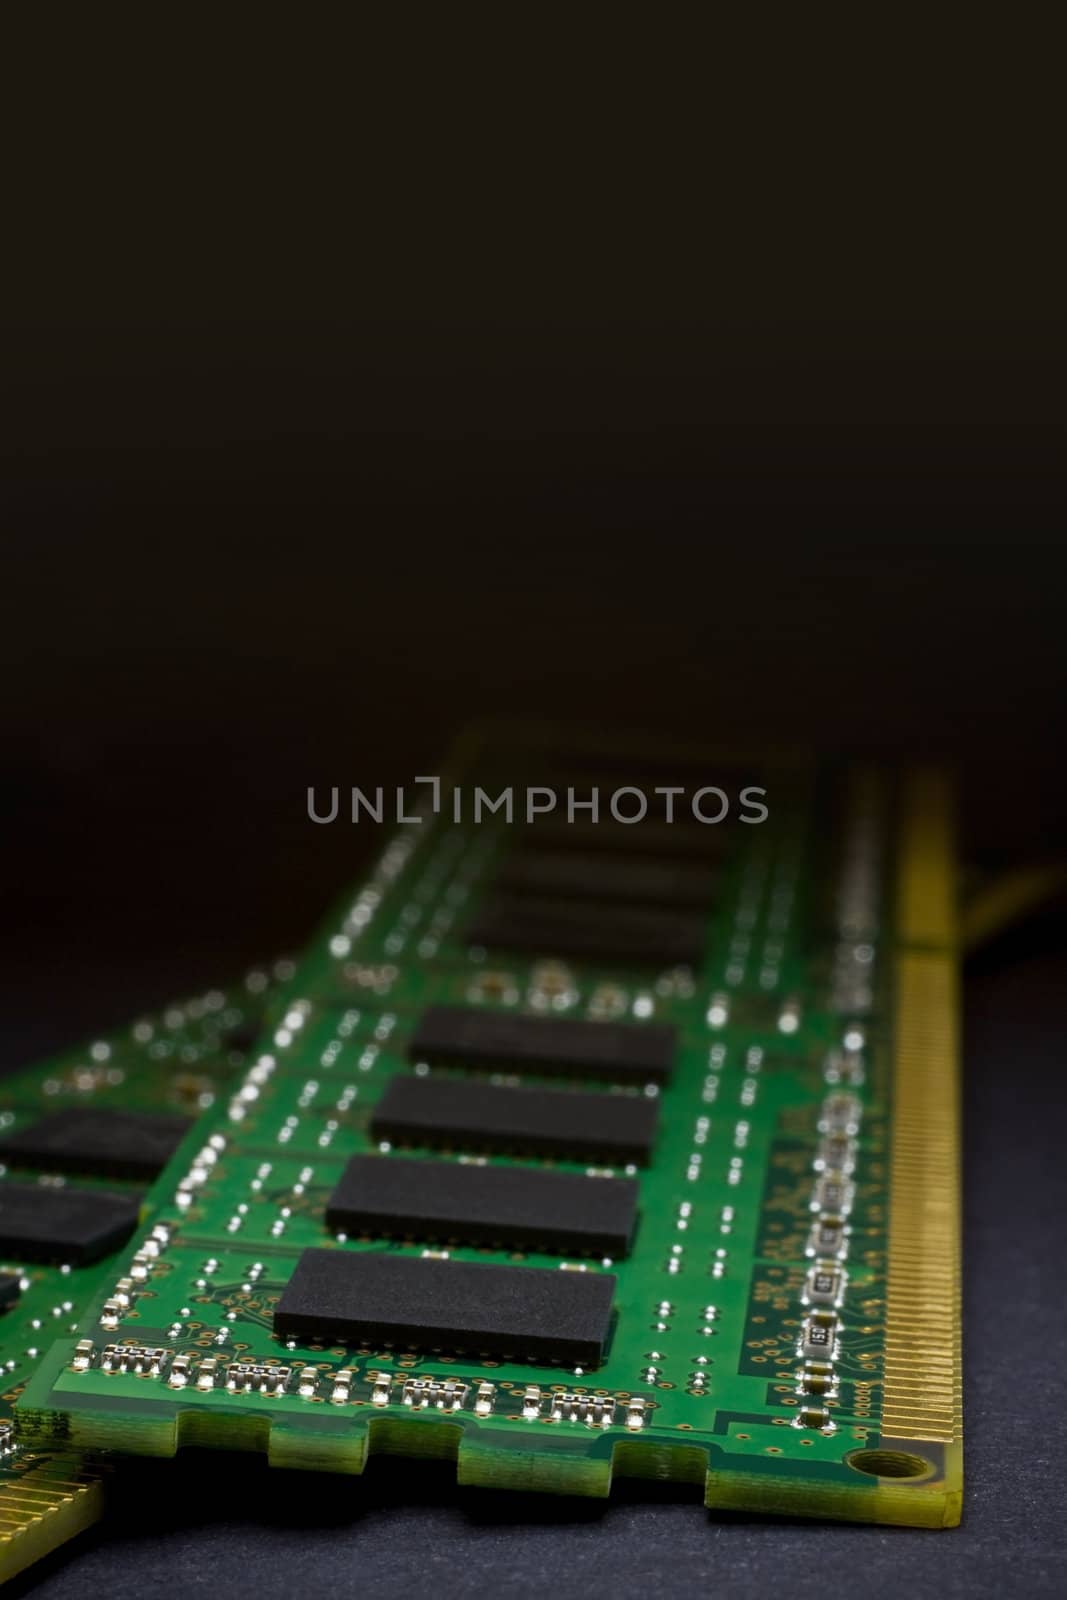 RAM in  close-up dark background